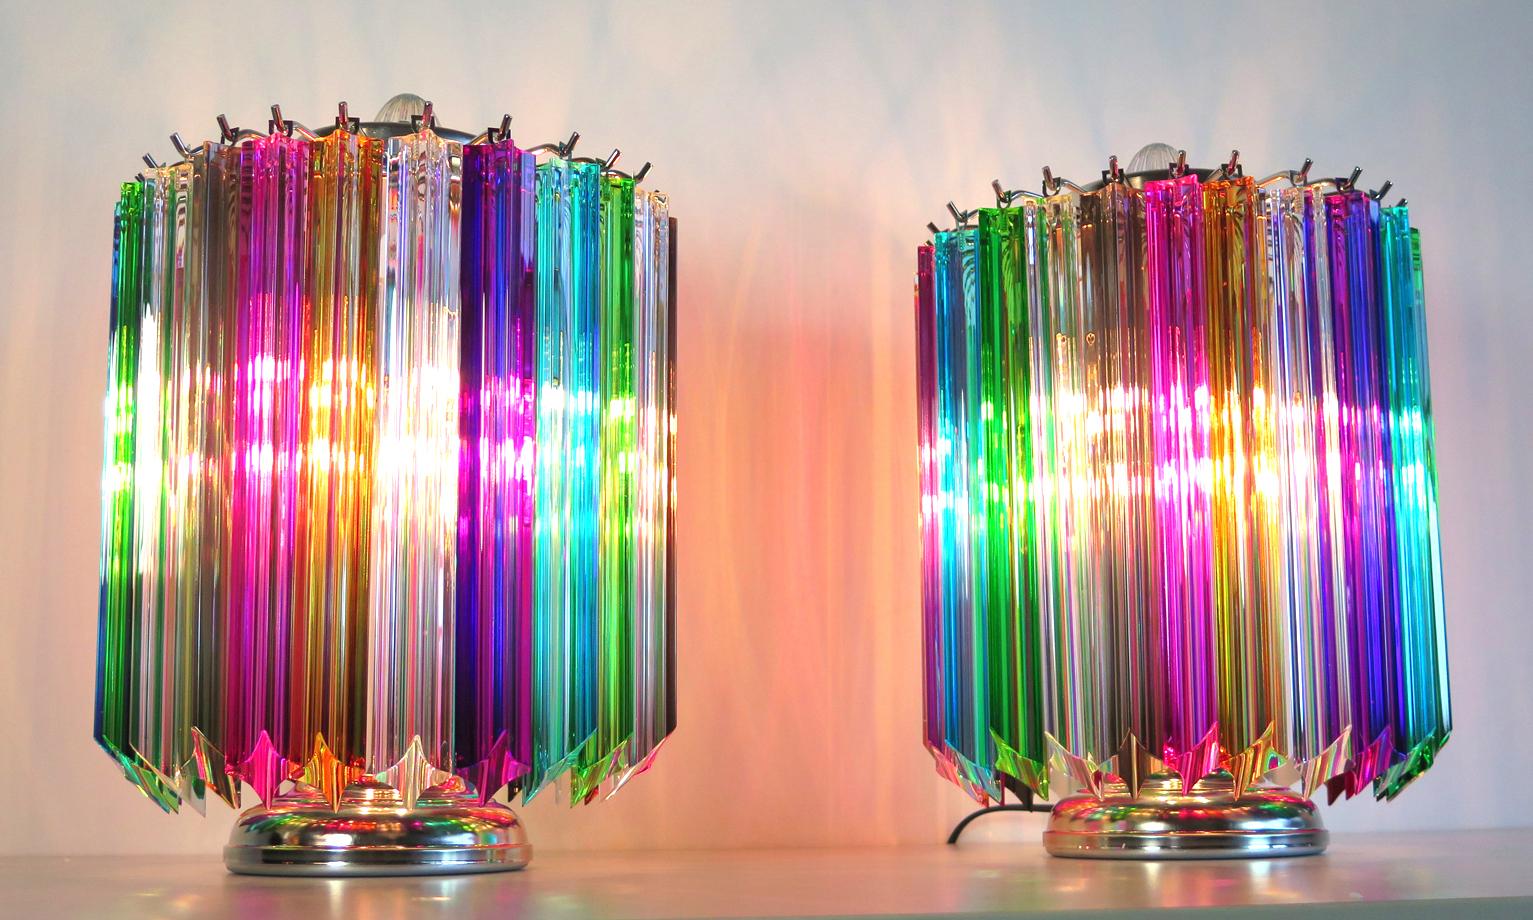 Lampe de table Quadriedri multicolore - modèle Mariangela
Magnifique paire de lampes de table, 24 prismes multicolores en cristal de Murano Quadriedri pour chaque lampe. Cadre en métal nickelé. Élégant objet d'ameublement.
Période : Fin du 20e